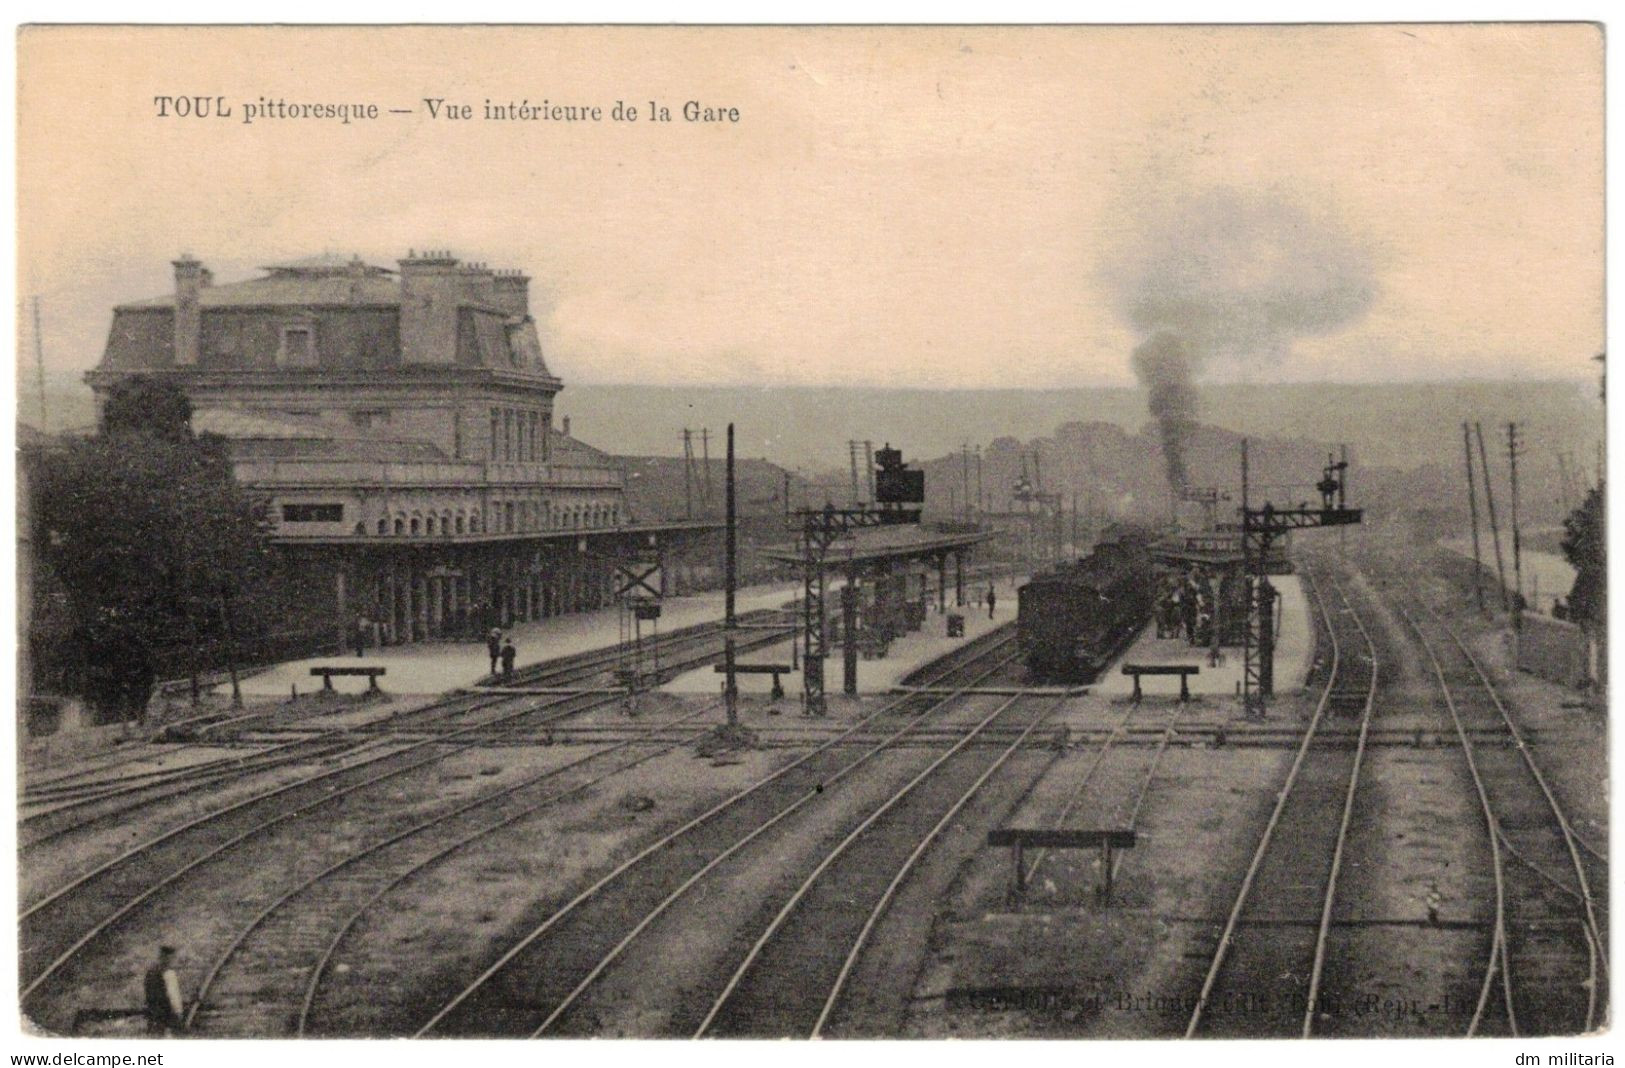 54 - CPA 1919 : TOUL - VUE INTÉRIEUR DE LA GARE - TRAIN LOCOMOTIVE À VAPEUR EN GARE - MEURTHE-ET-MOSELLE - Bahnhöfe Mit Zügen